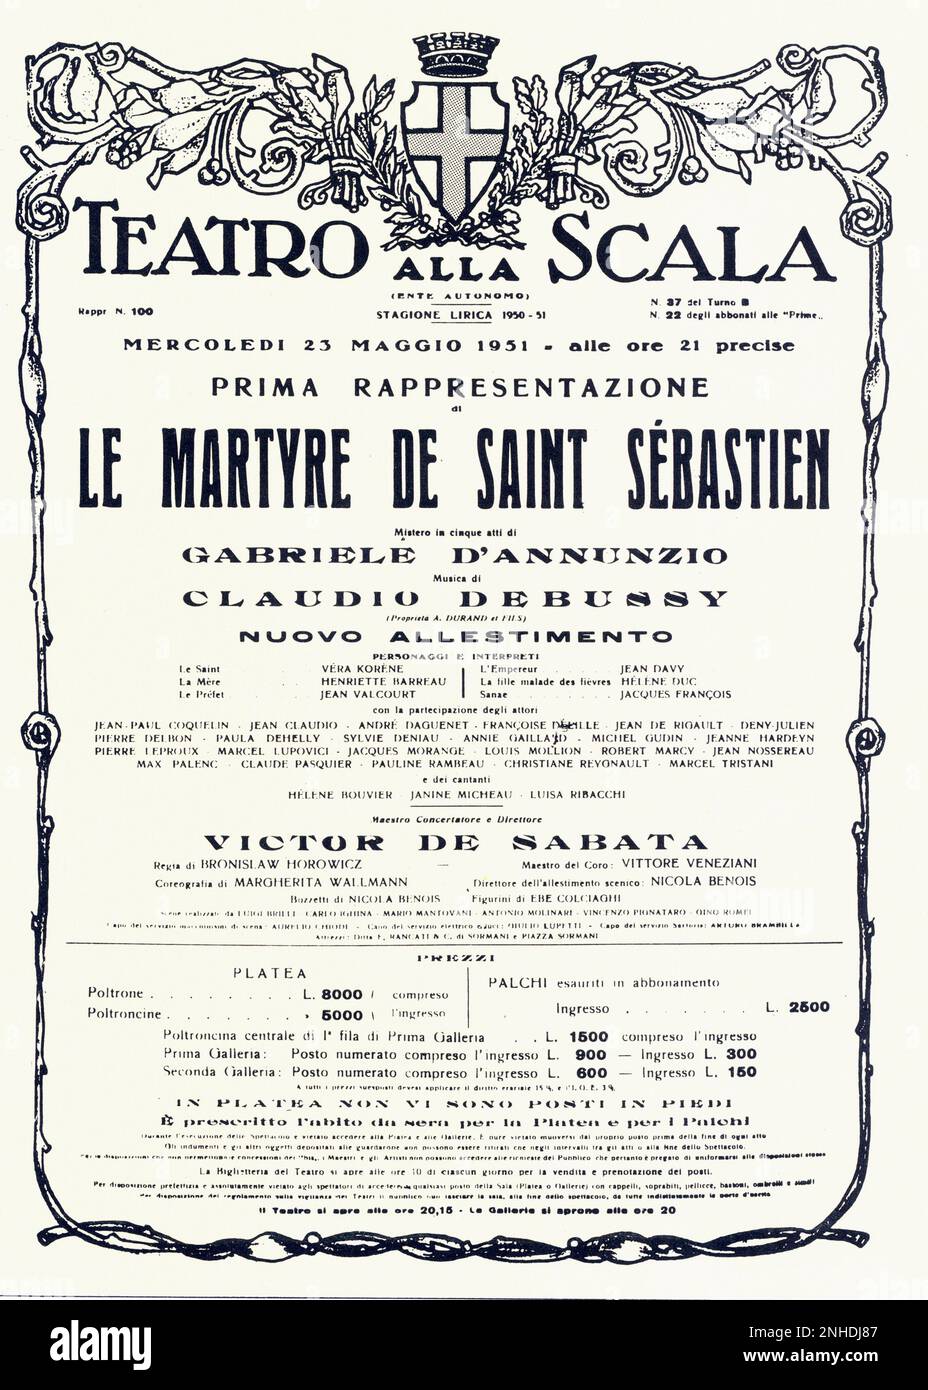 1951 : The poster for opening of  LE MARTYRE DE SAINT SEBASTIEN by Claude DEBUSSY , from a play by Gabriele D'ANNUNZIO   at   ALLA SCALA THEATRE in Milano , directed by movie conductor VICTOR DE SABATA  - TEATRO - OPERA LIRICA - MUSICA CLASSICA - CLASSICAL - MUSIC -  Theater - locandina - poster advertising  - DANNUNZIO - D' ANNUNZIO - BALLETTO - BALLET - IL MARTIRIO DI  SAN SEBASTIANO ----   Archivio GBB Stock Photo